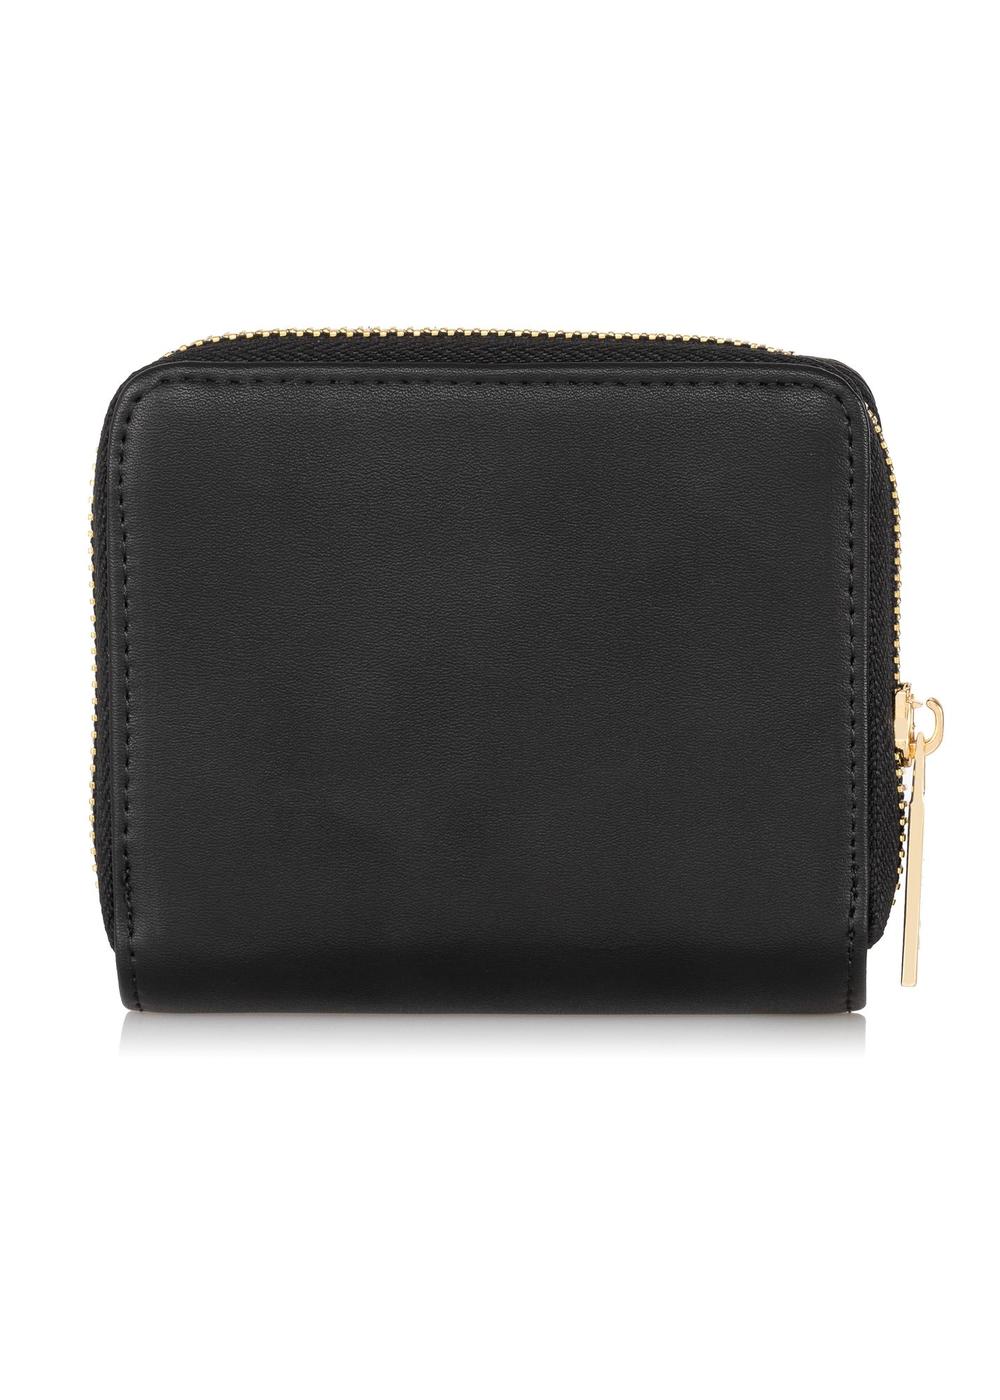 Mały czarny portfel damski z dżetami POREC-0158C-99(Z23)